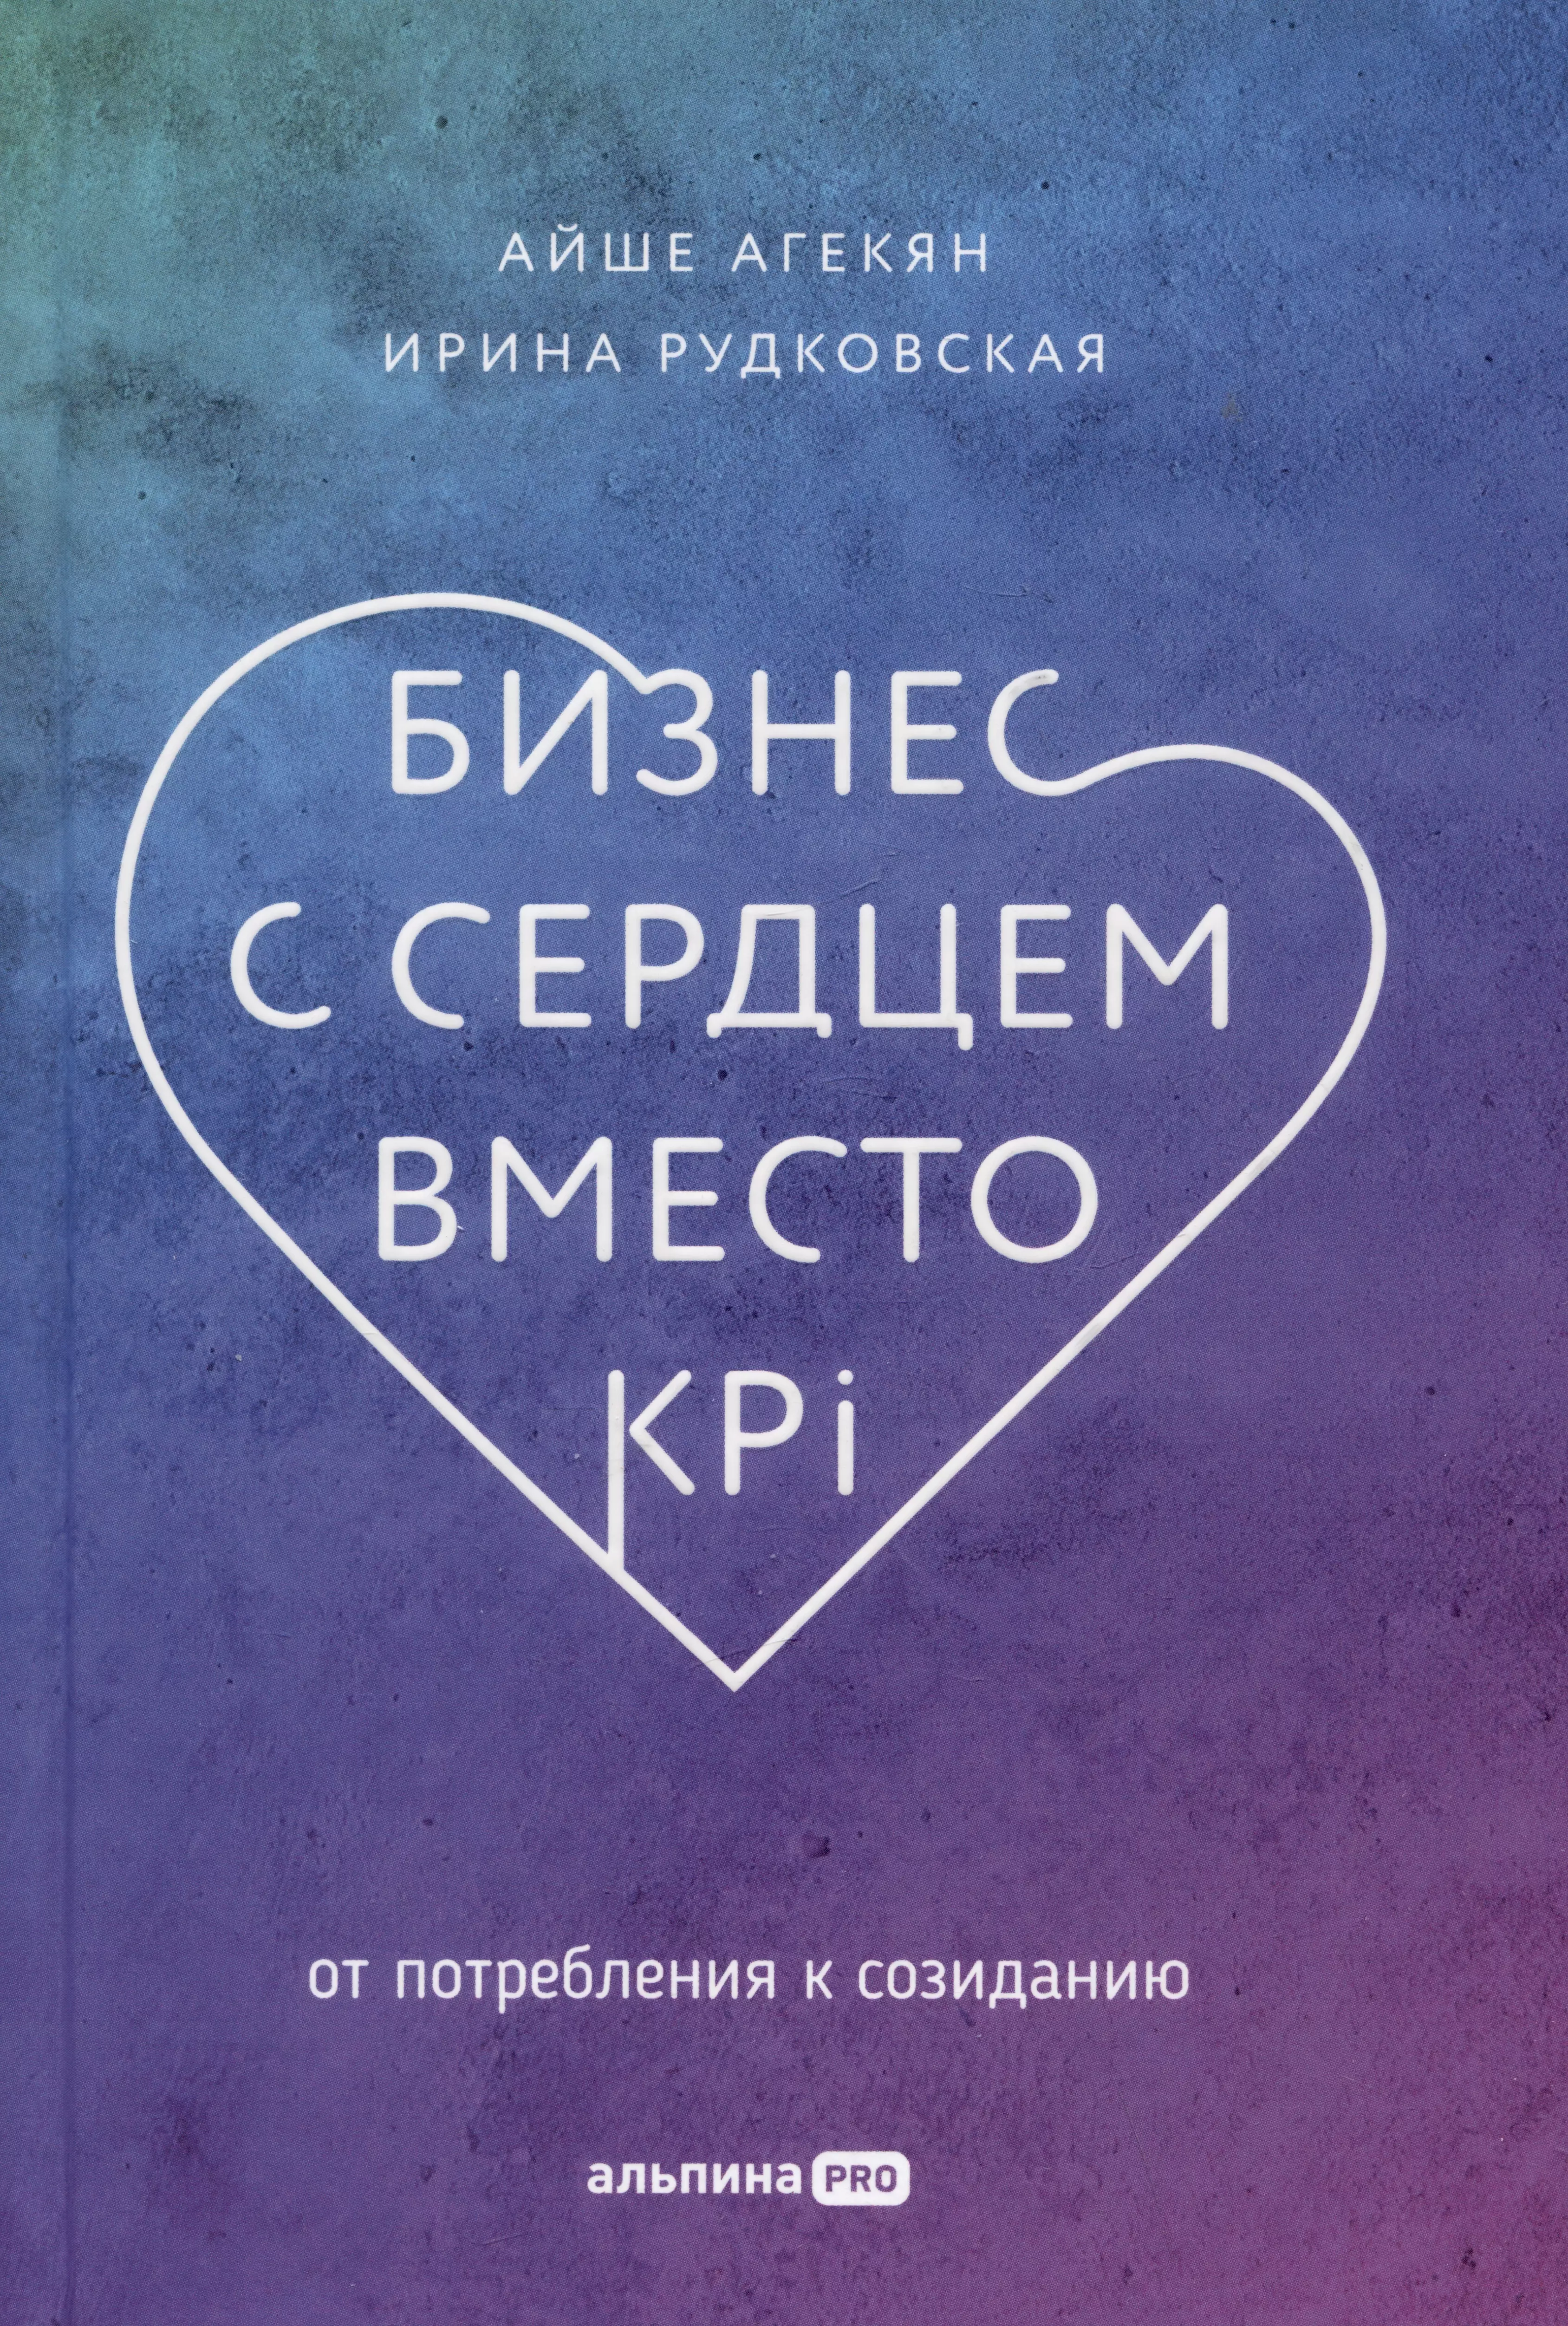 Агекян Айше, Рудковская Ирина - Бизнес с сердцем вместо KPI: От потребления к созиданию